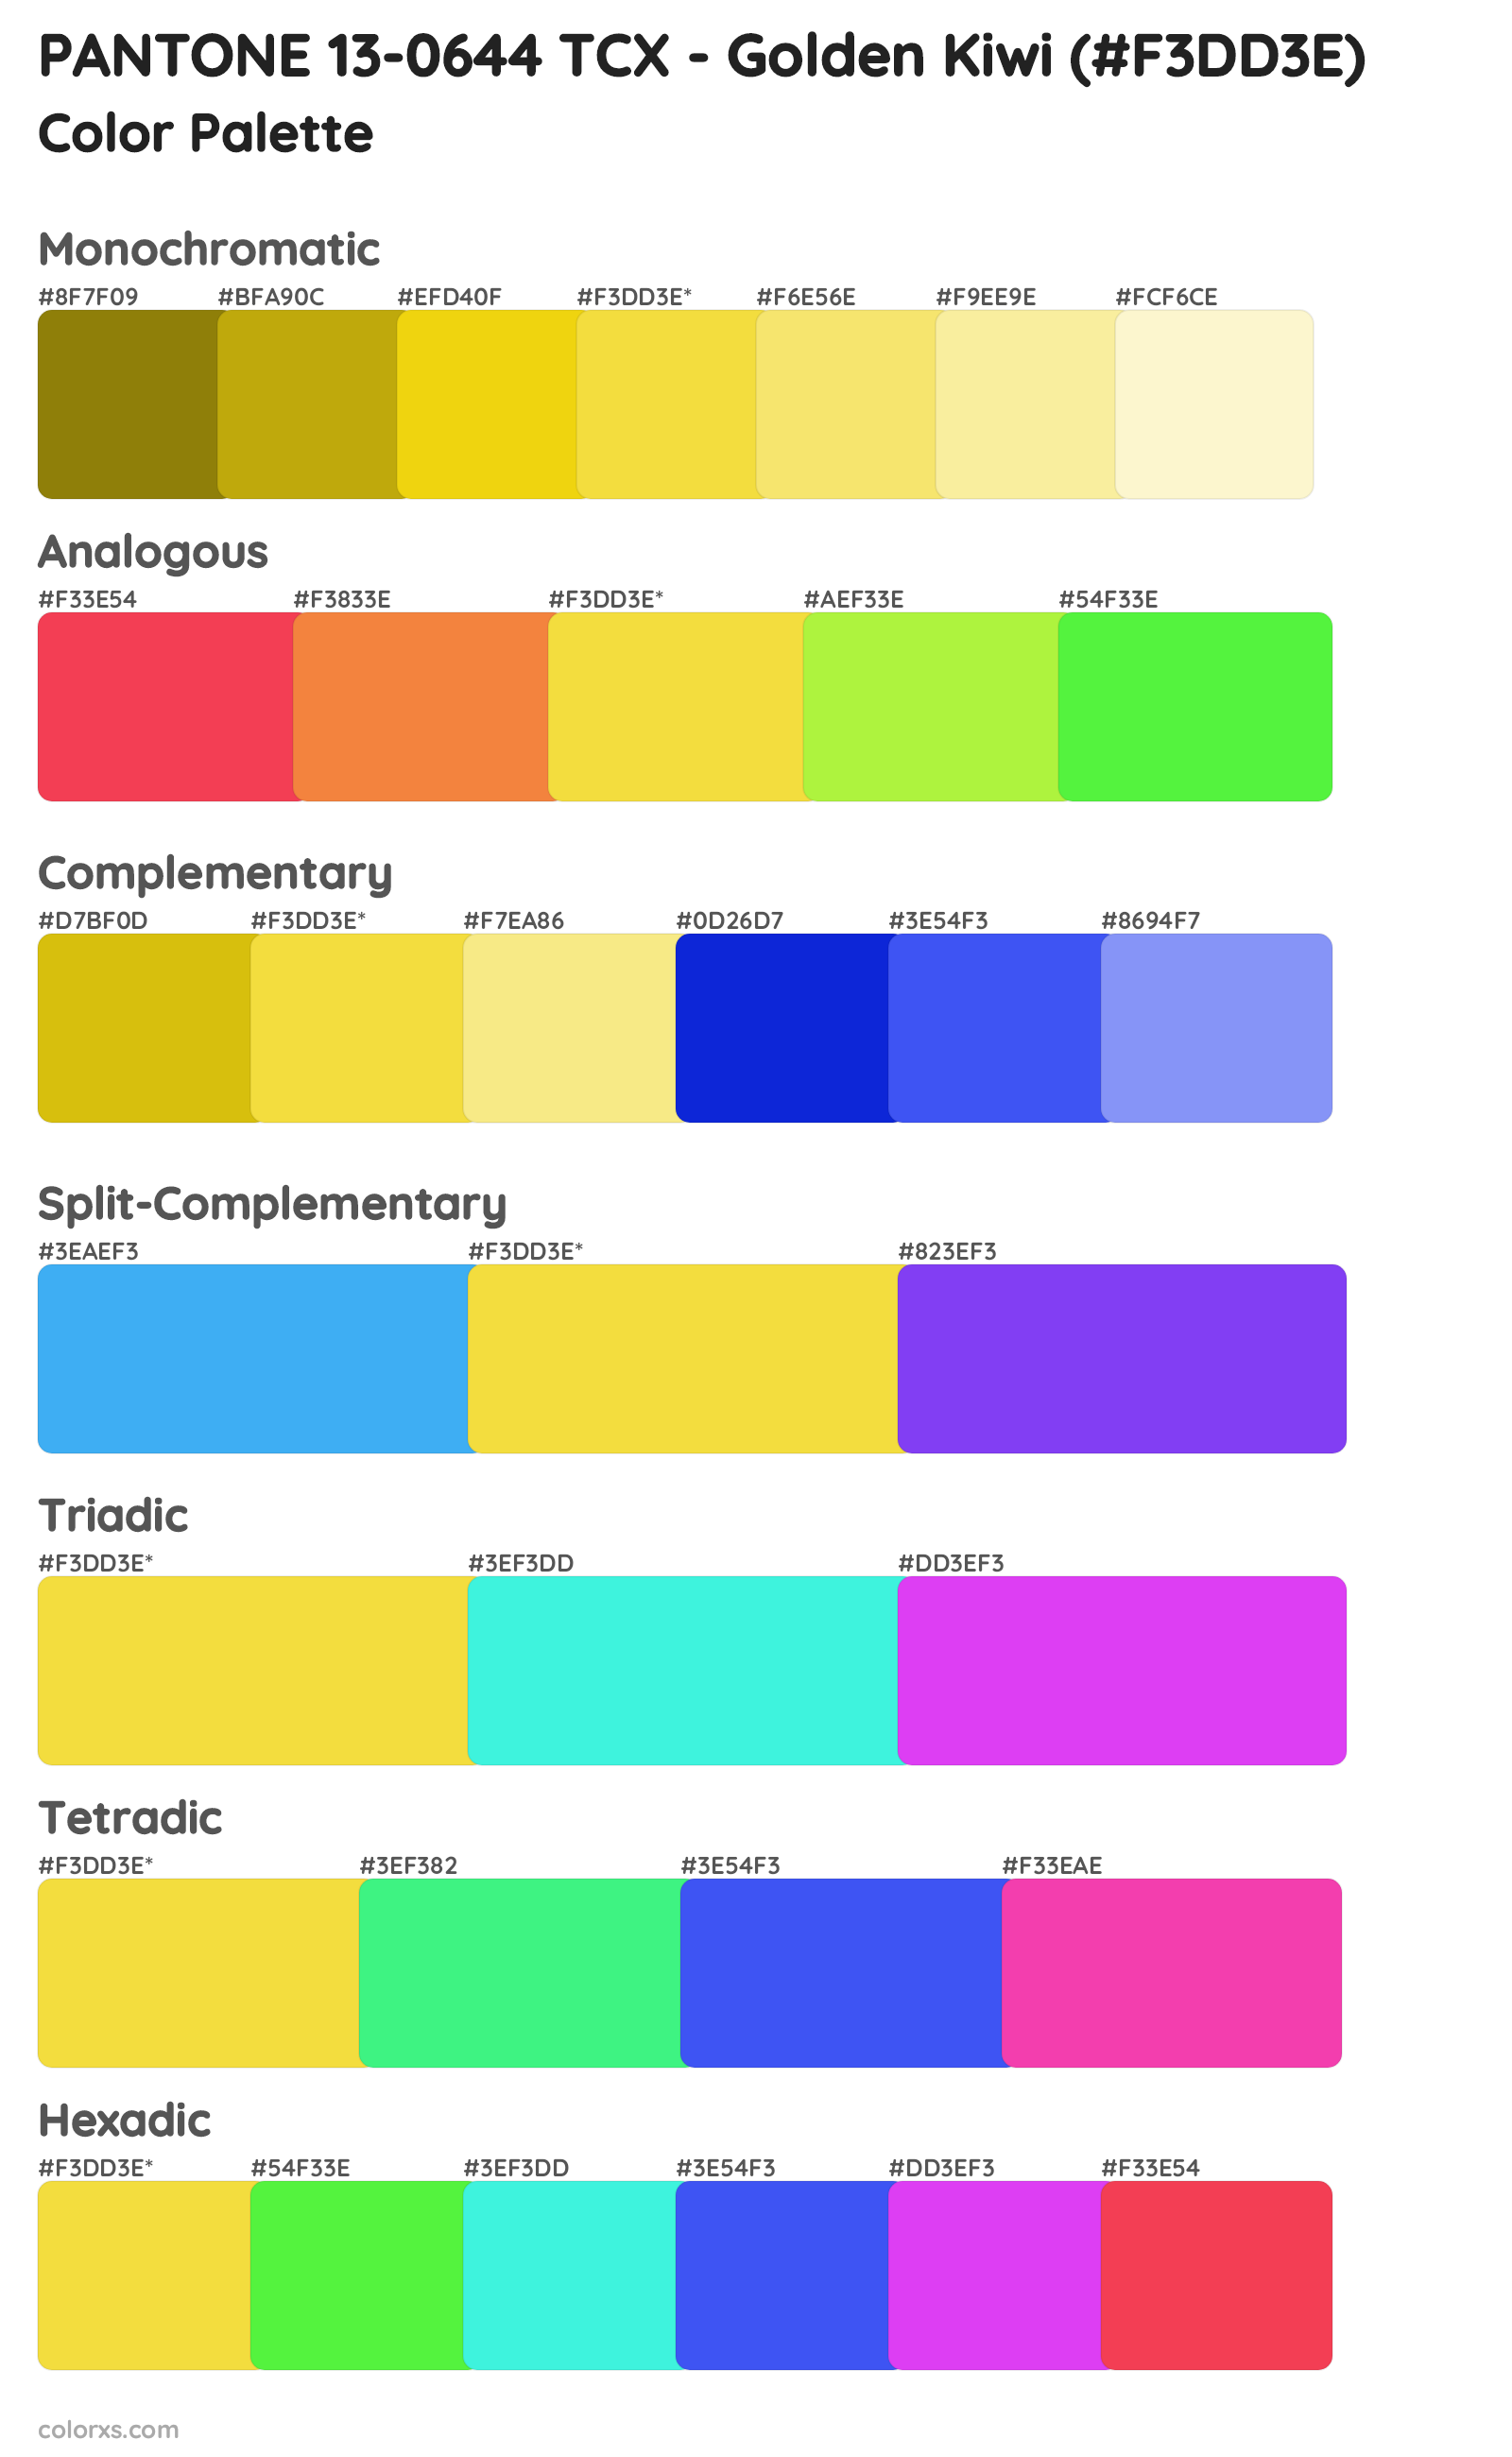 PANTONE 13-0644 TCX - Golden Kiwi Color Scheme Palettes